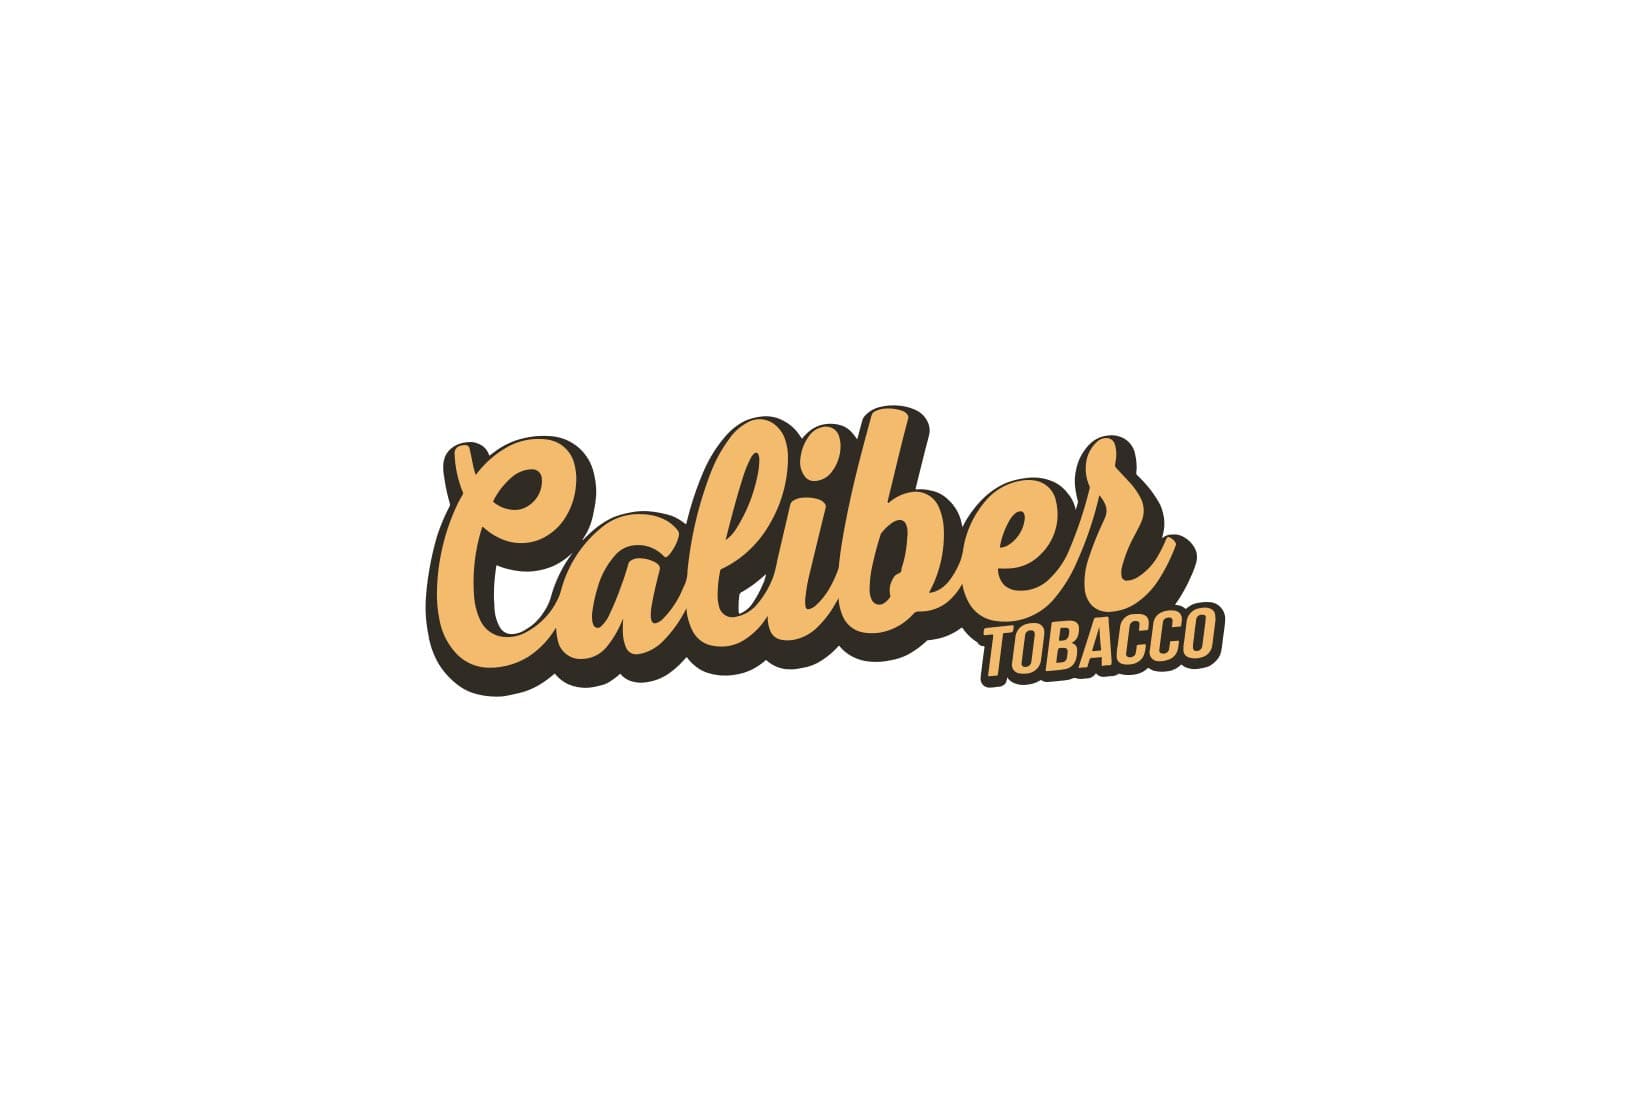 Табак для кальяна Caliber Tobacco: описание, вкусы, миксы, отзывы